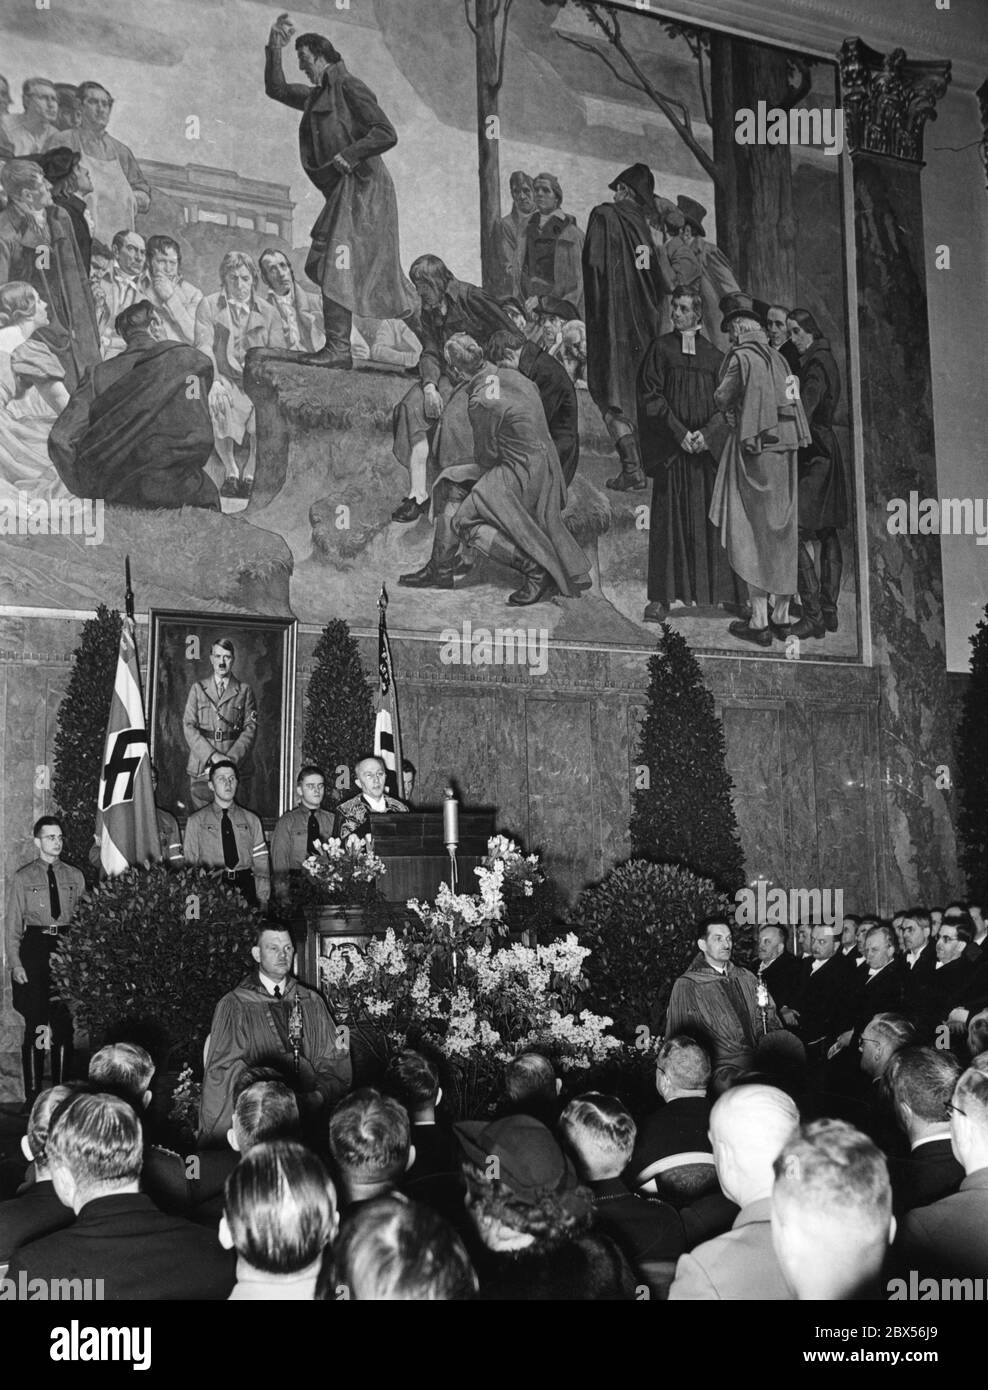 Der Rektor der Universität Berlin, Professor Willy Hoppe (am Pult in Kleid), begrüßt die Anwesenden bei einer Feier zum 5. Jahrestag des "Tags der nationalen Erhebung" in der Neuen Aula. Hinter ihm steht ein Porträt Adolf Hitlers. Stockfoto